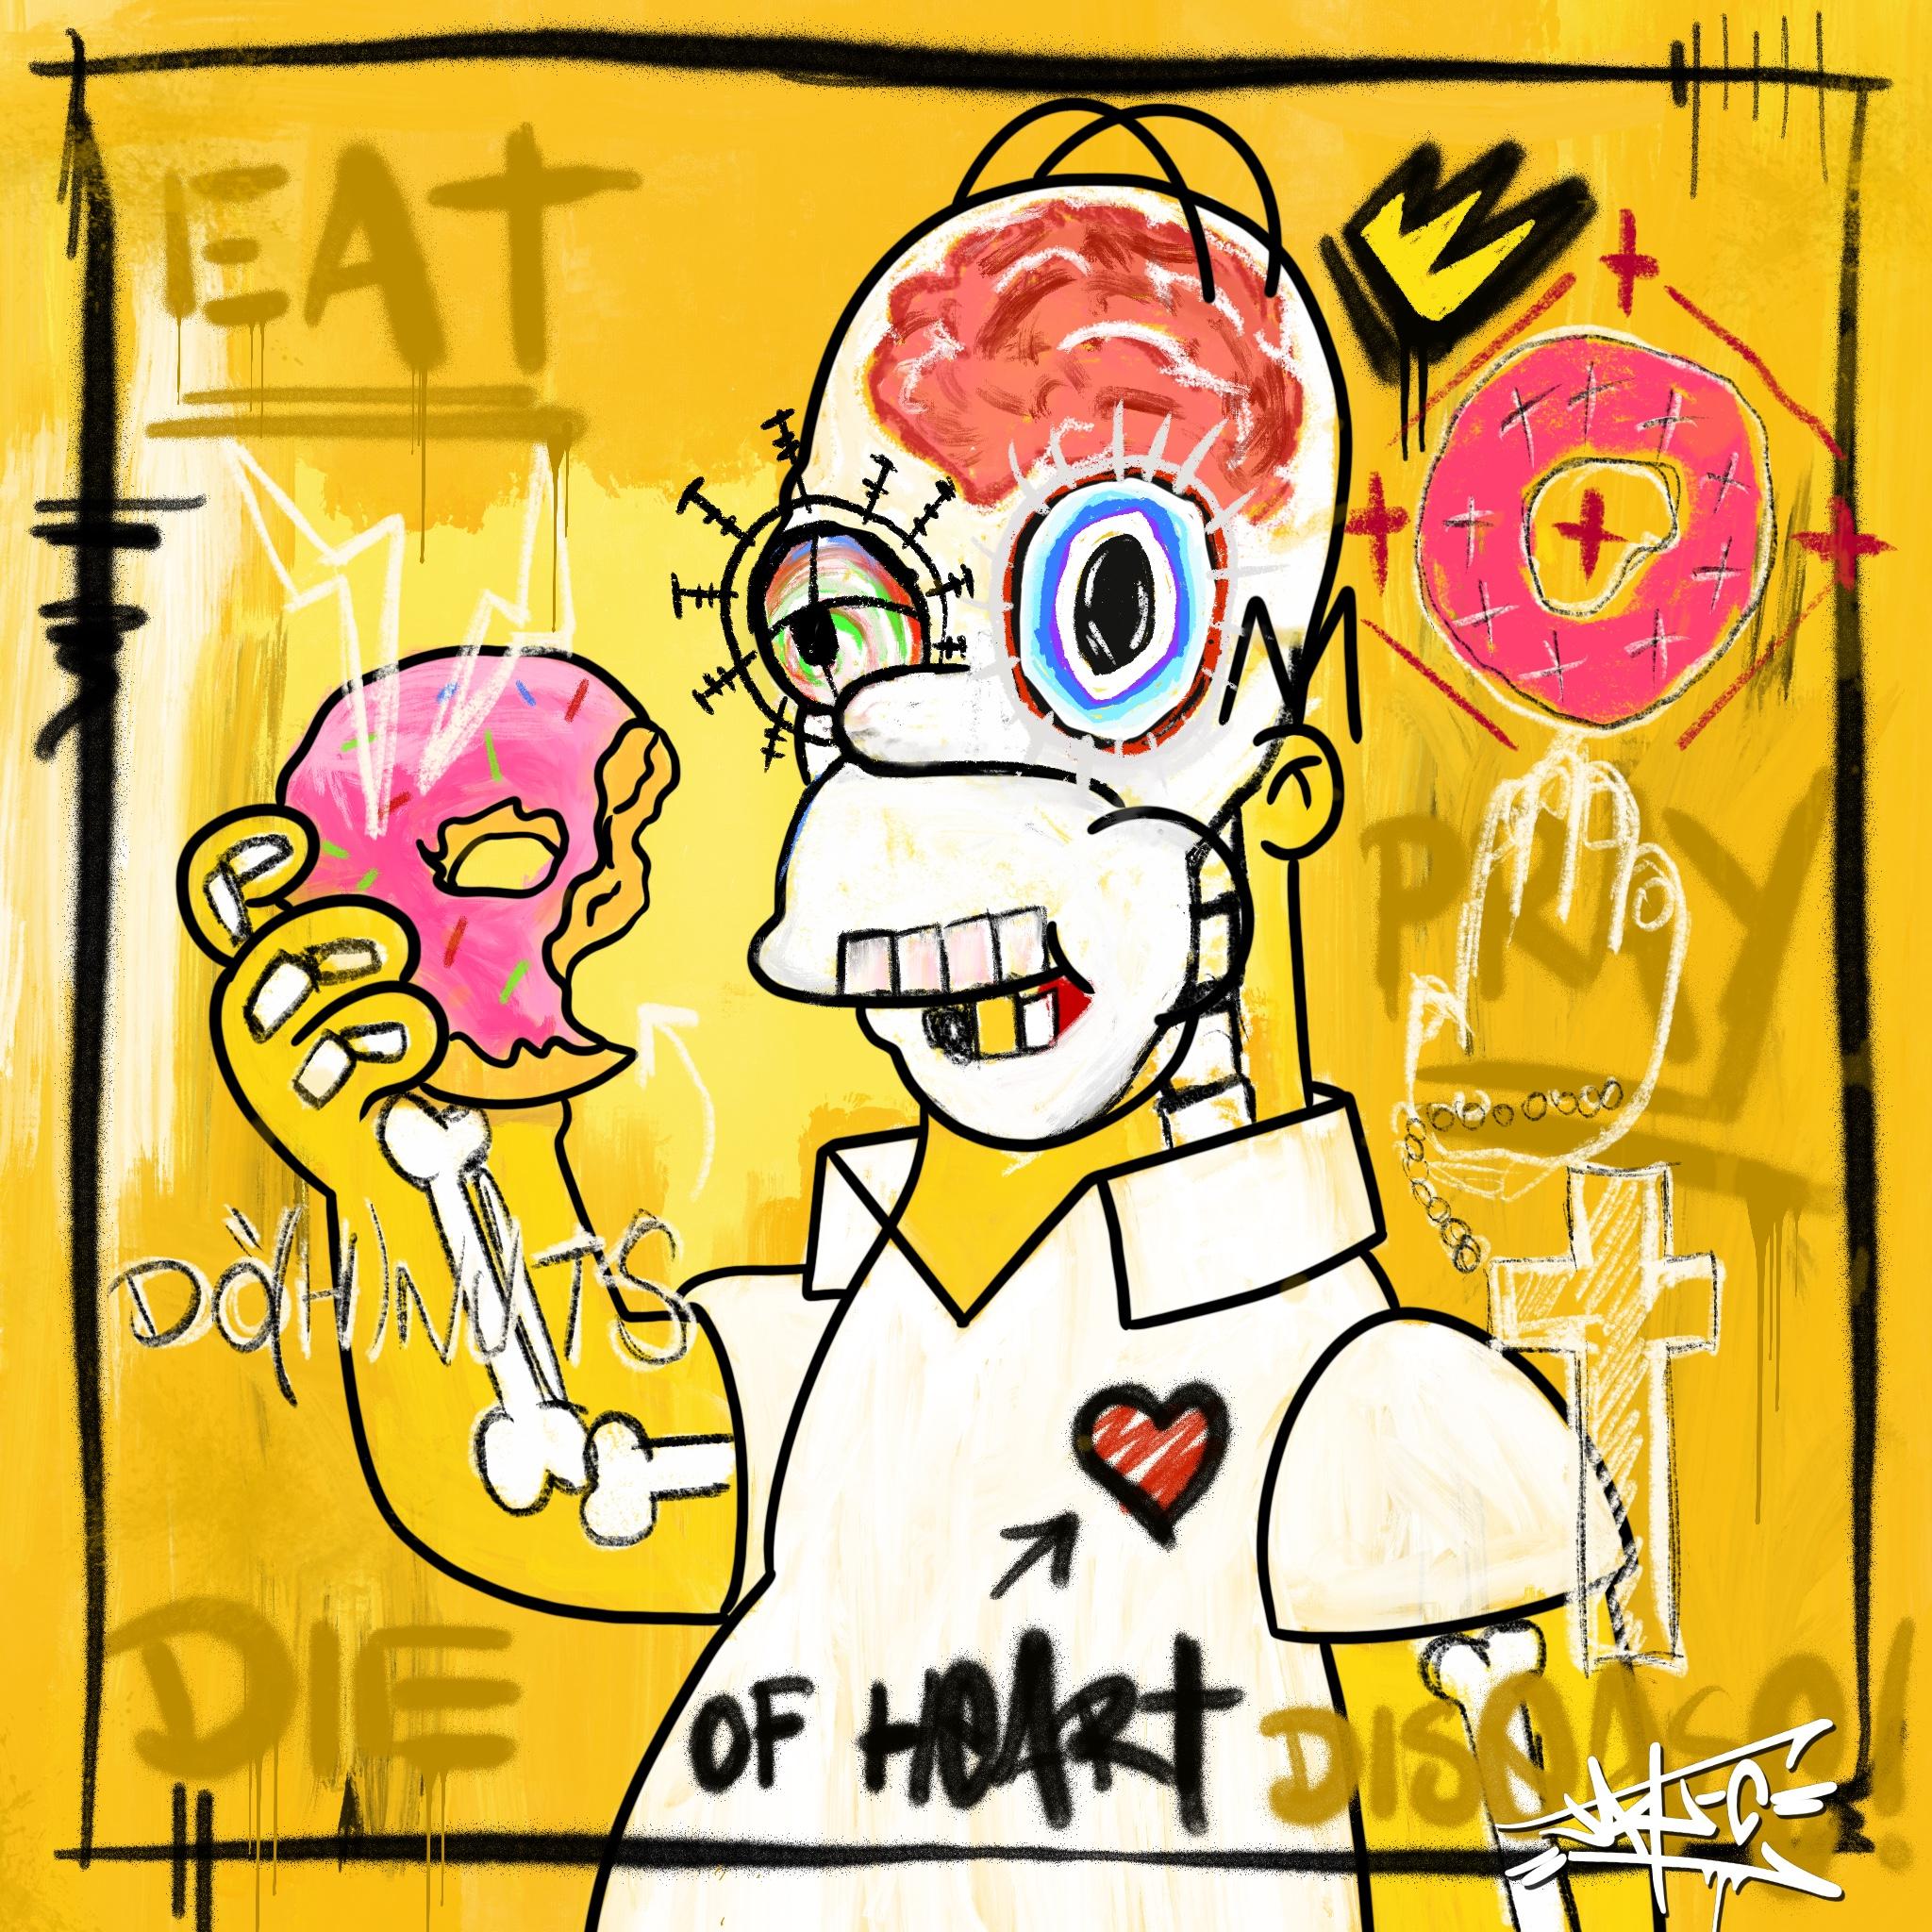 Jay-C Portrait Print - Eat! Pray! Die of Heart Disease!, Painting, Simpsons, Pop Art, Street Art